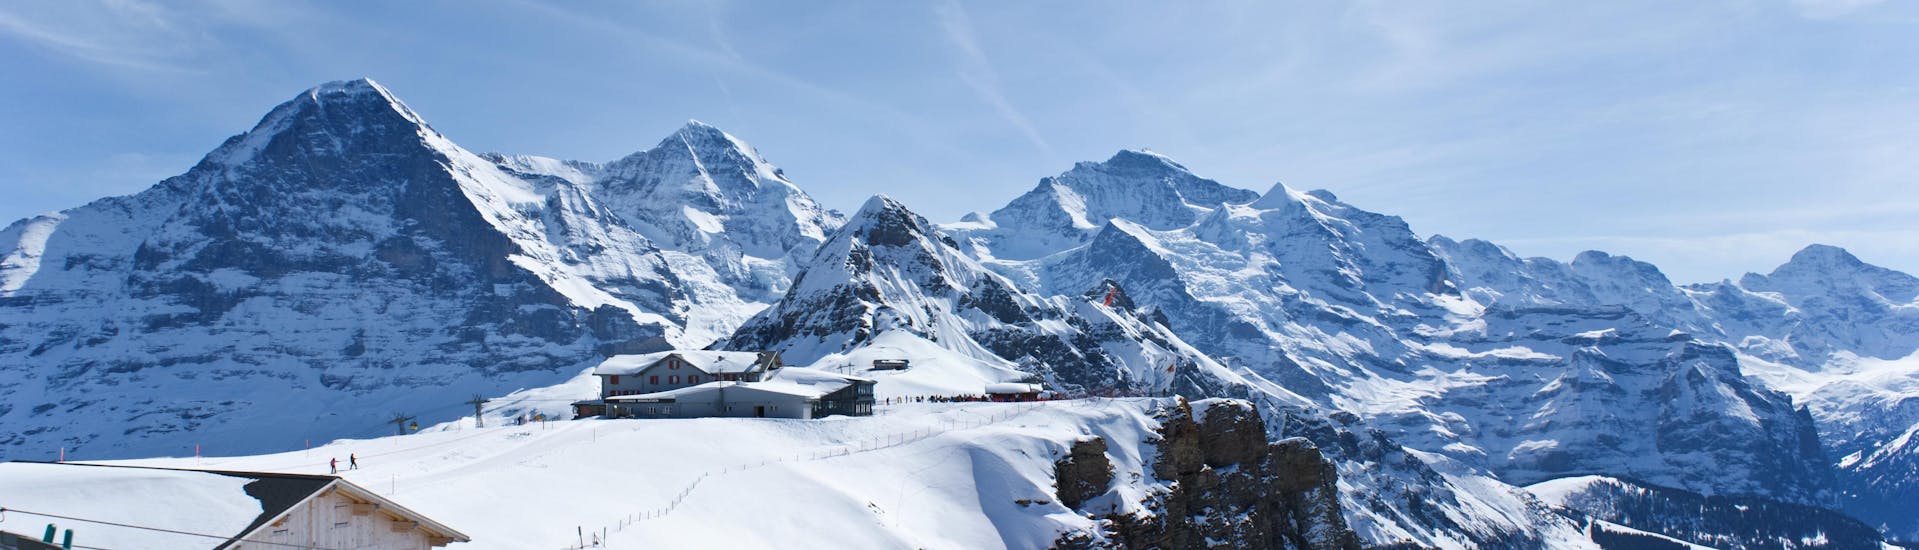 Vue du paysage de montagnes enneigées entourant la station de téléphérique dans la station de ski suisse d'Interlaken.